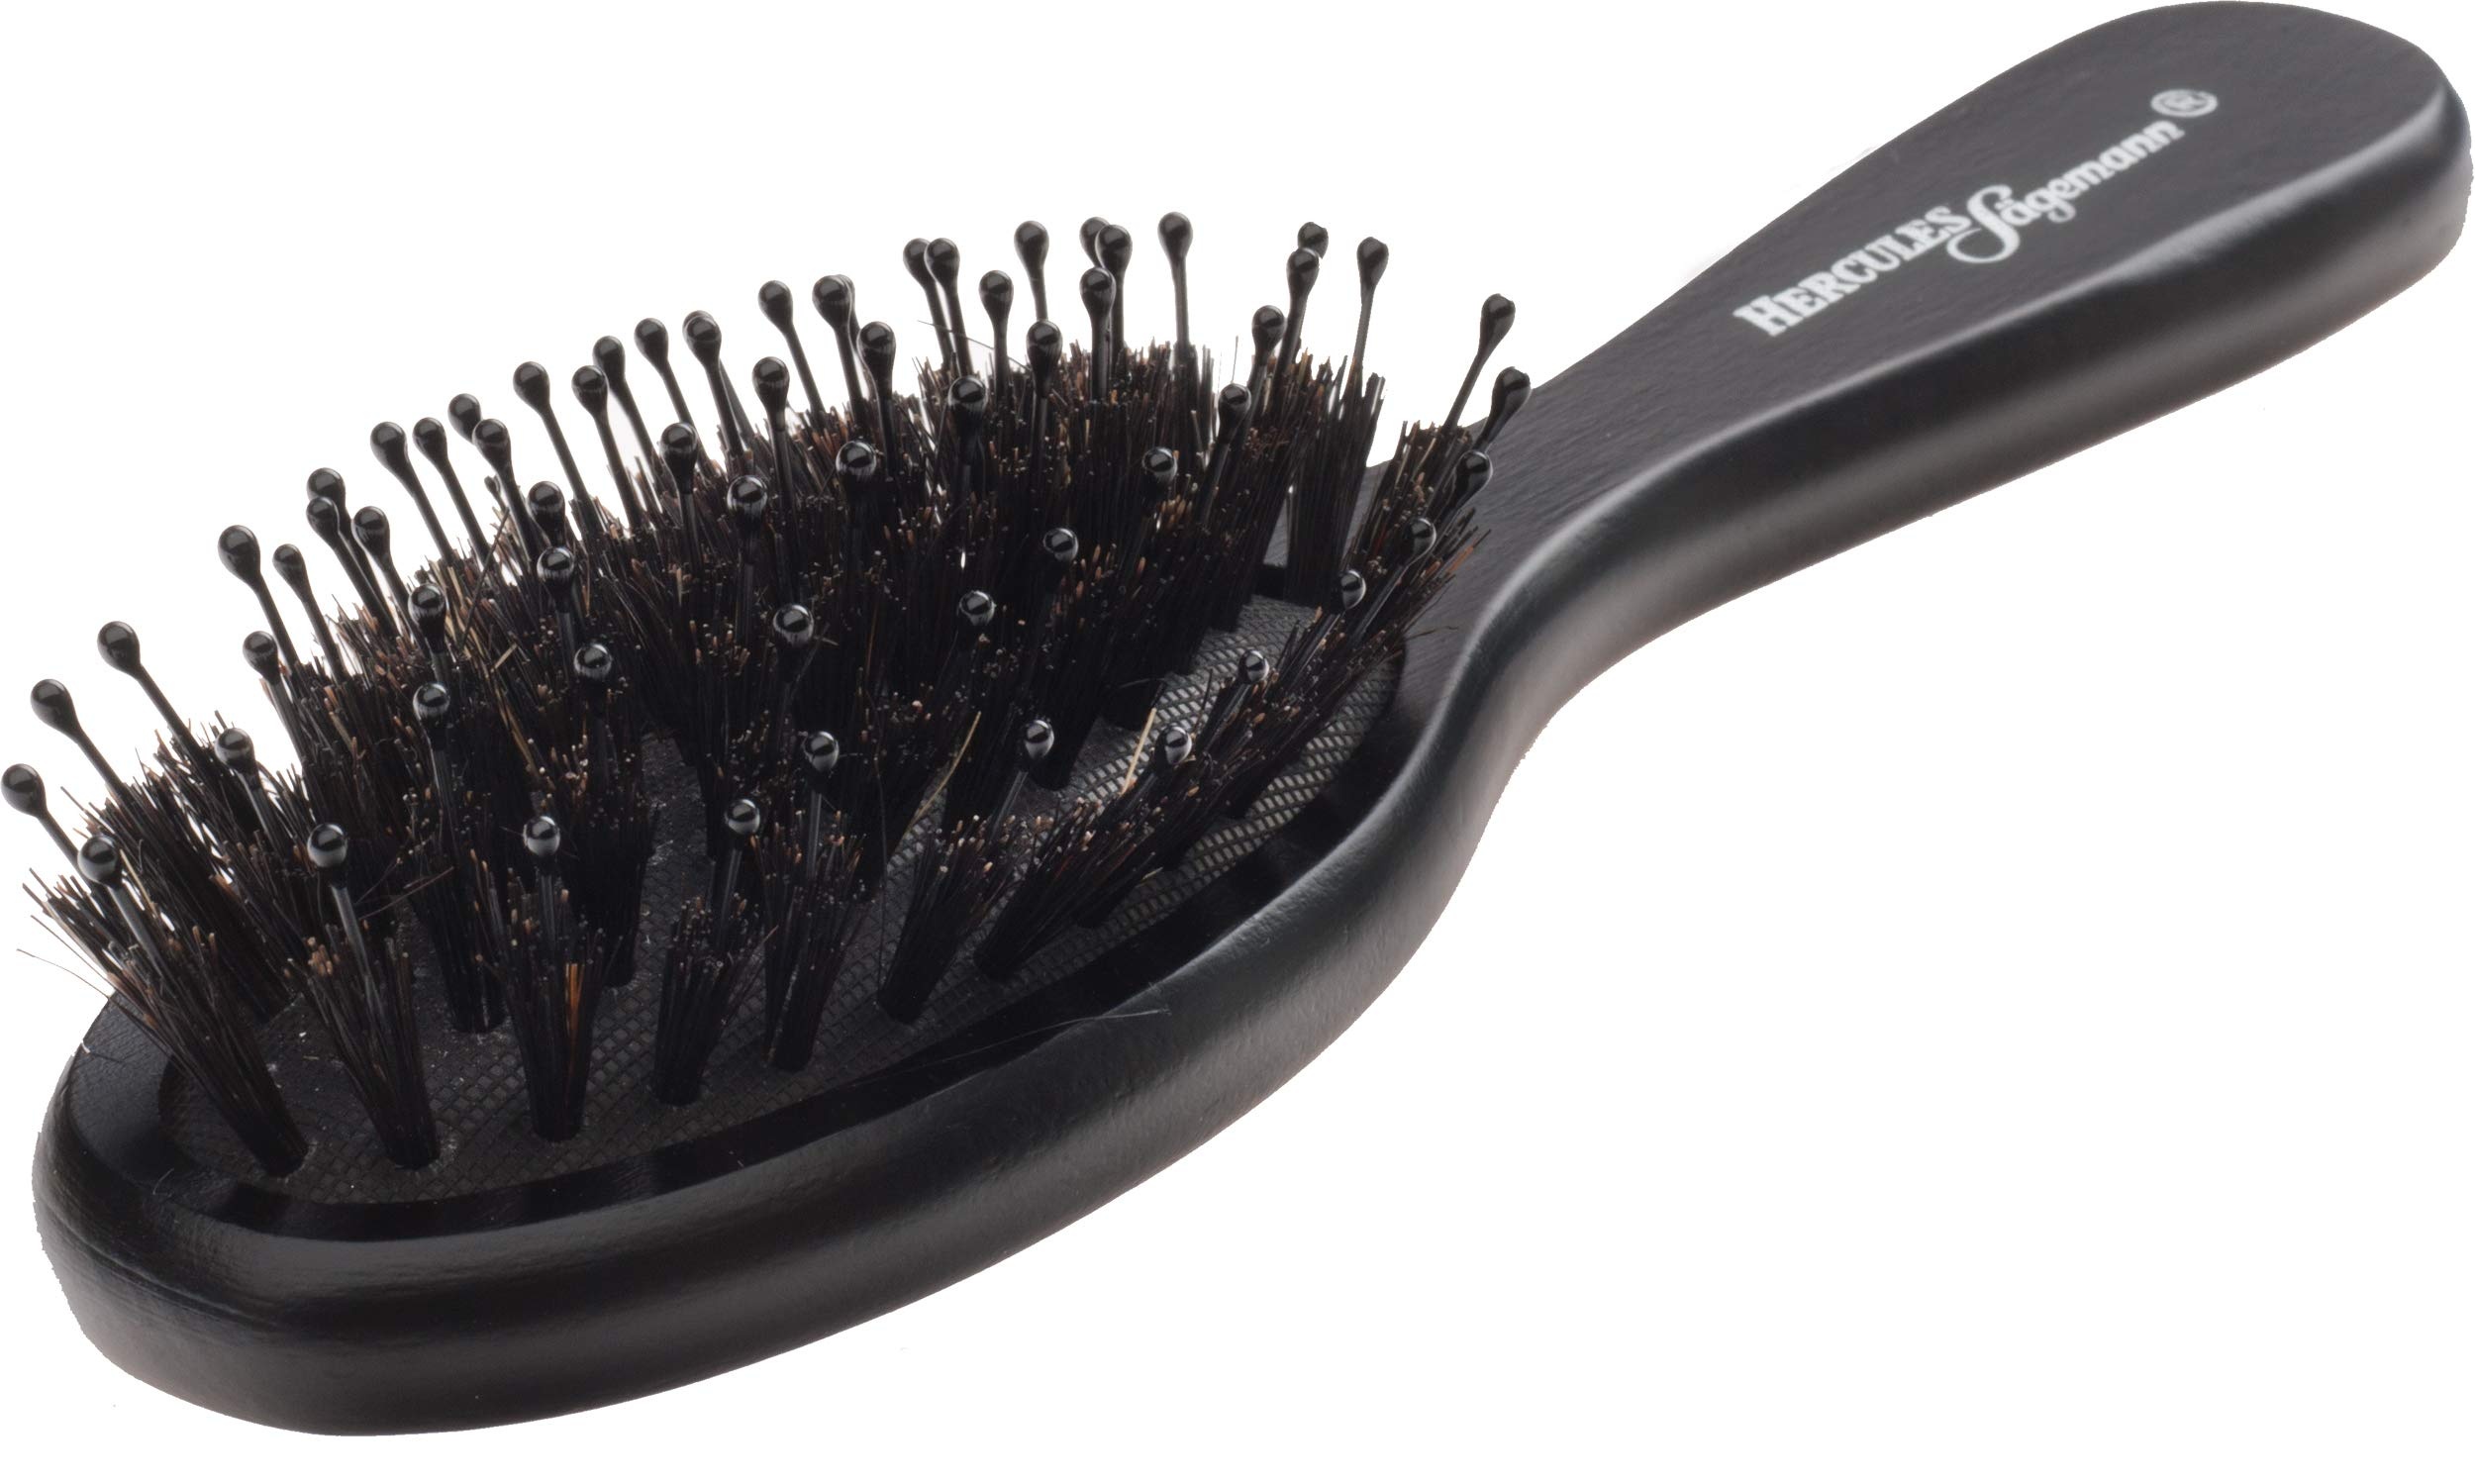 Hercules Sägemann - 7-Reihige Ovale Pflegebürste (9530), Kompakt & Ergonomisch, Perfekt für Feines Haar, 175 mm